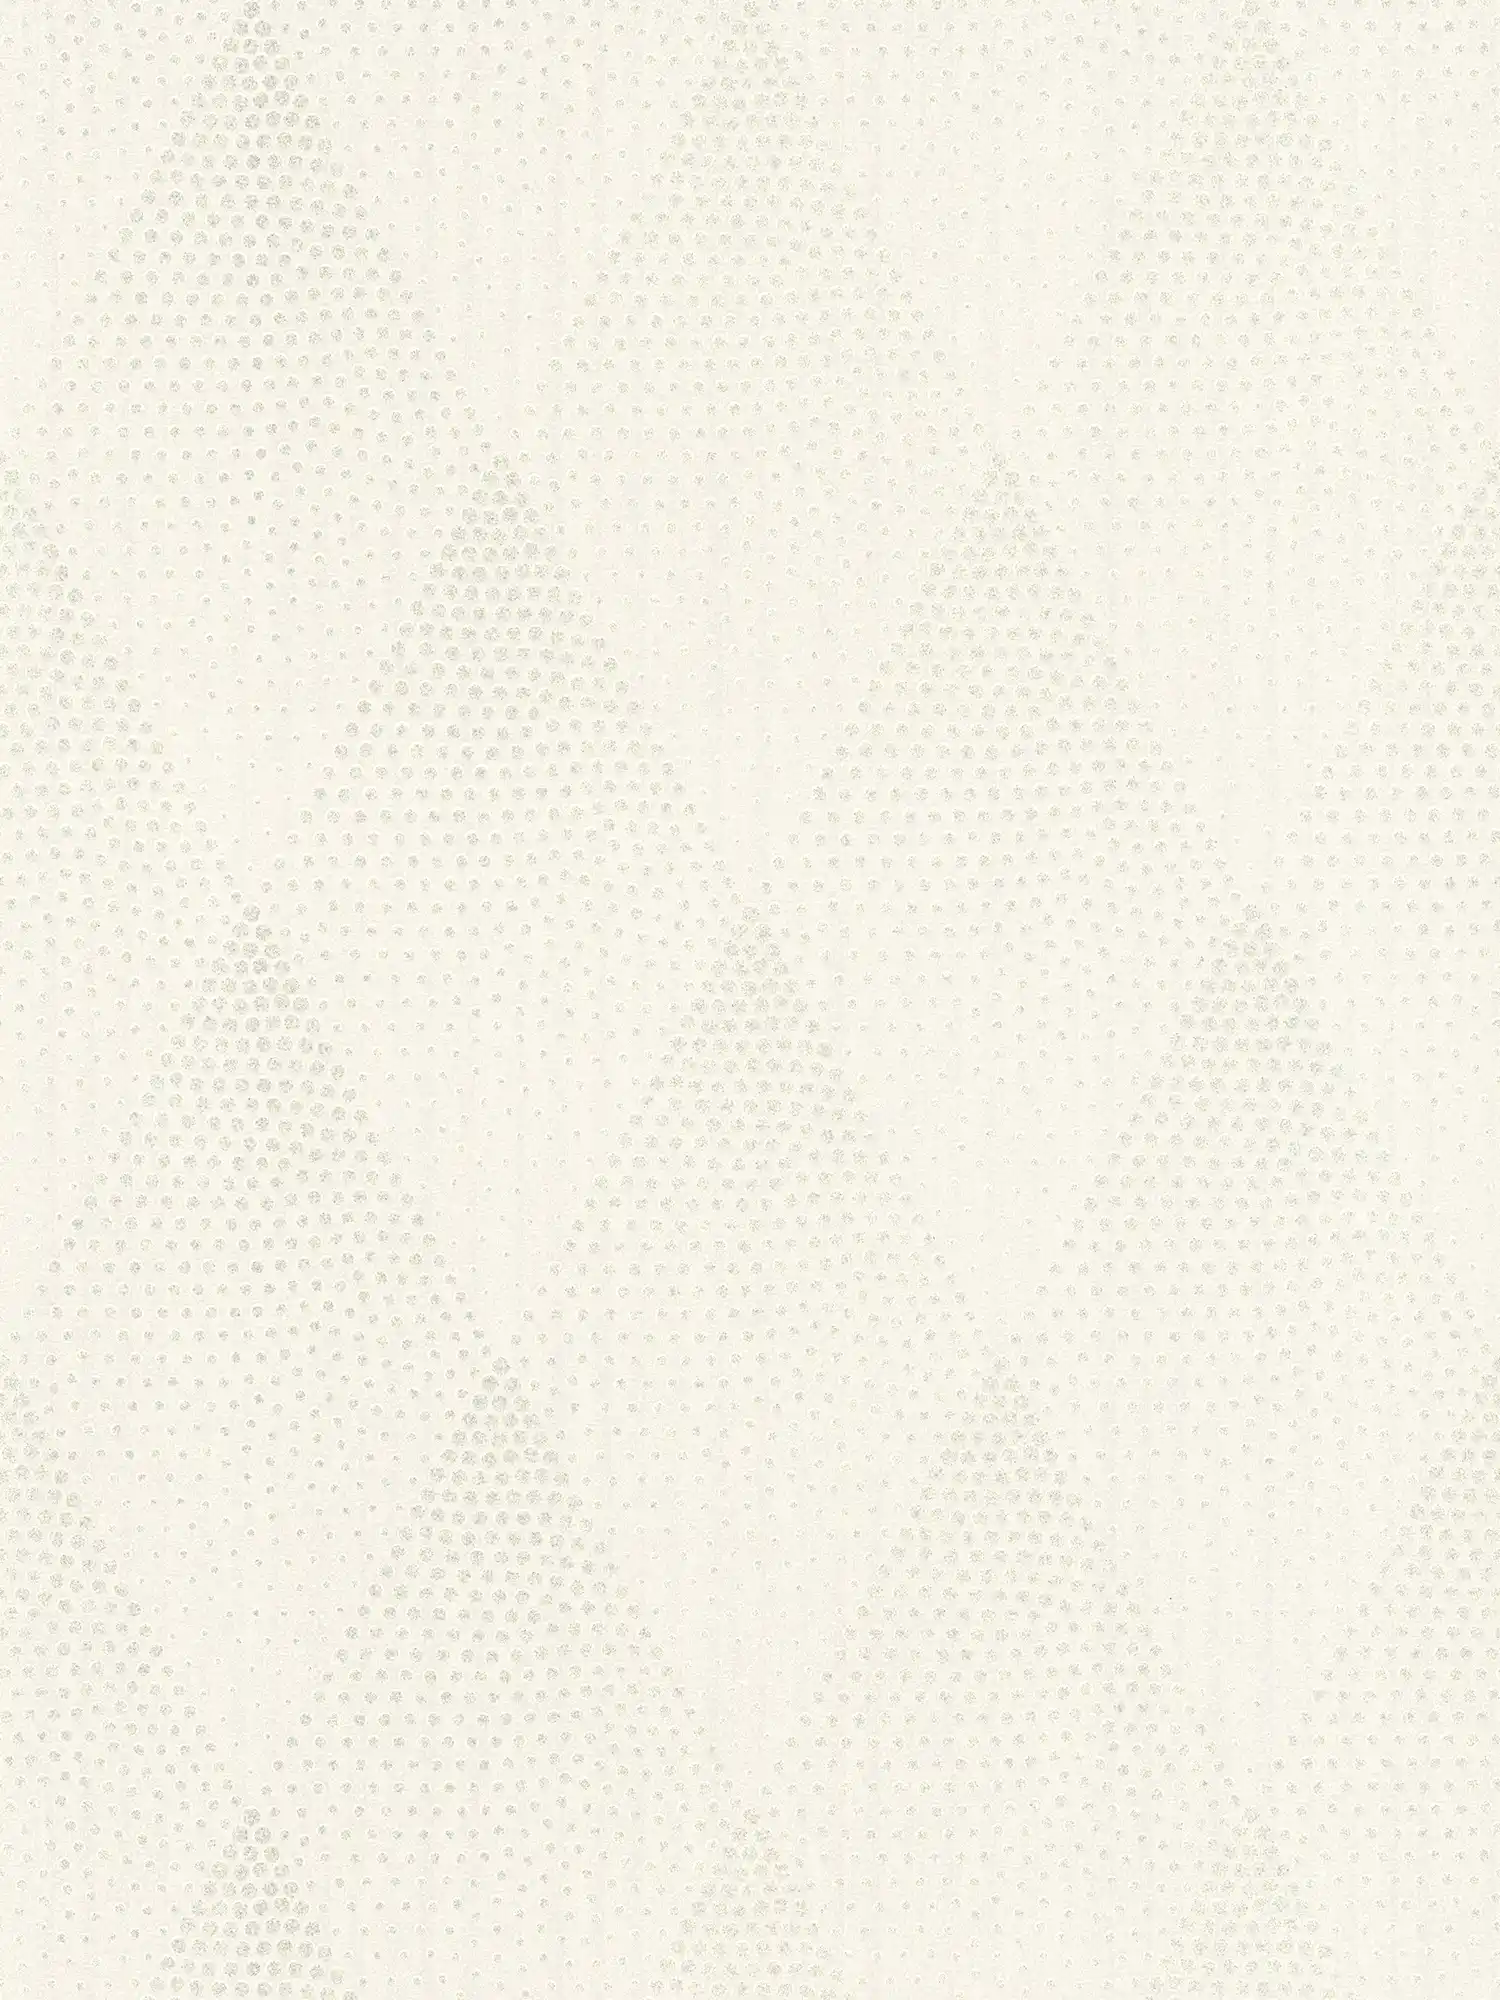 Punkte-Tapete Glitzer Effekt im Retro Stil – Weiß, Silber, Grau
